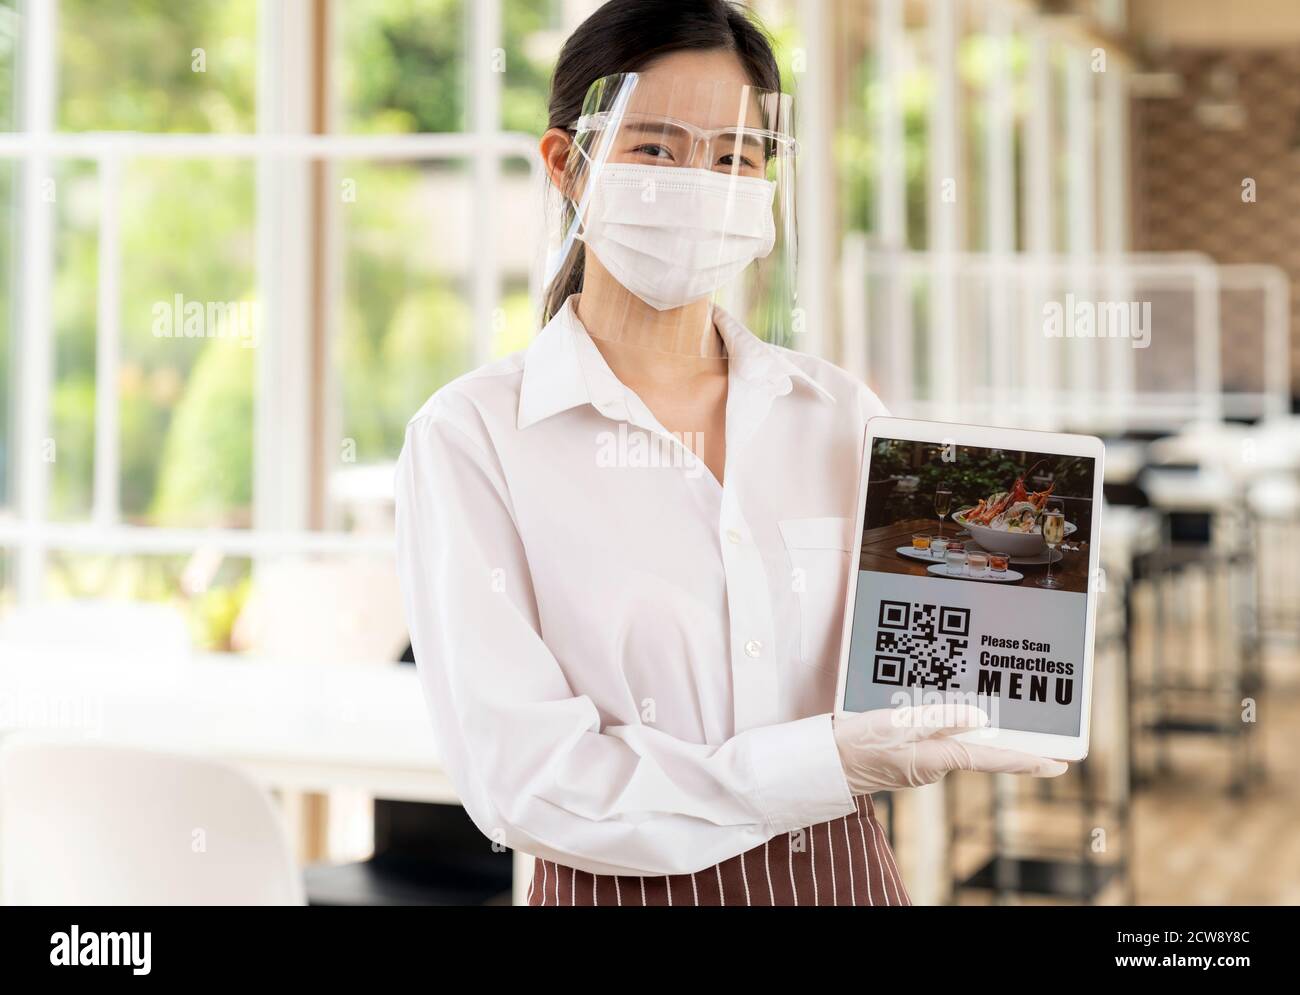 Asiatische Kellnerin mit Gesichtsmaske und Gesichtsschutz halten digitale Tablette mit QR-Code für Kunden für Online-kontaktlos-Menü scannen. Online kontaktlos und Stockfoto